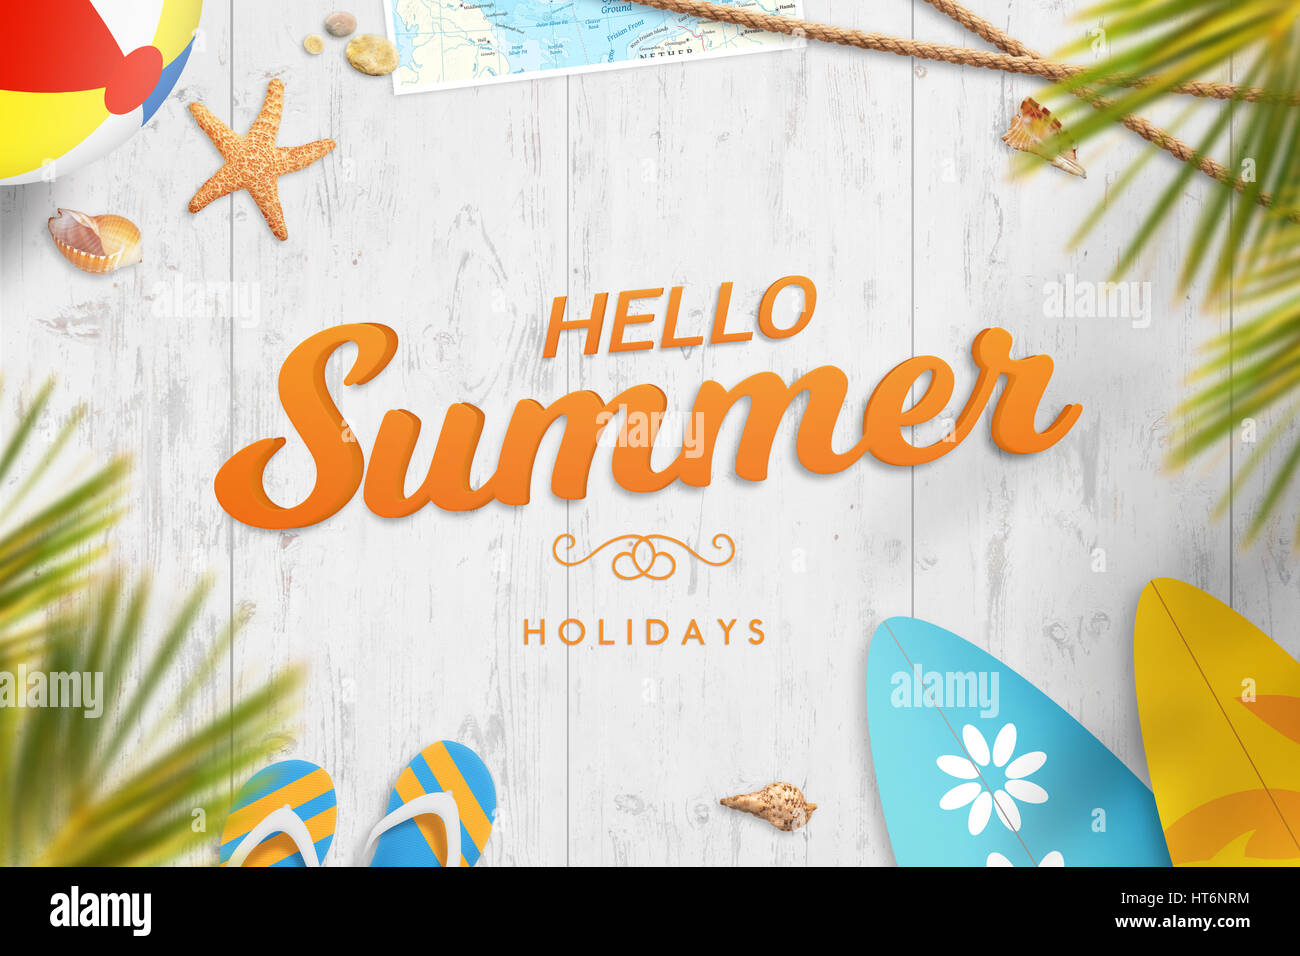 Bonjour les vacances d'été. Maison de vacances image avec texte de motivation. Palmiers, ball, surf, lunettes, carte, étoiles, slipers et shell à côté. Banque D'Images